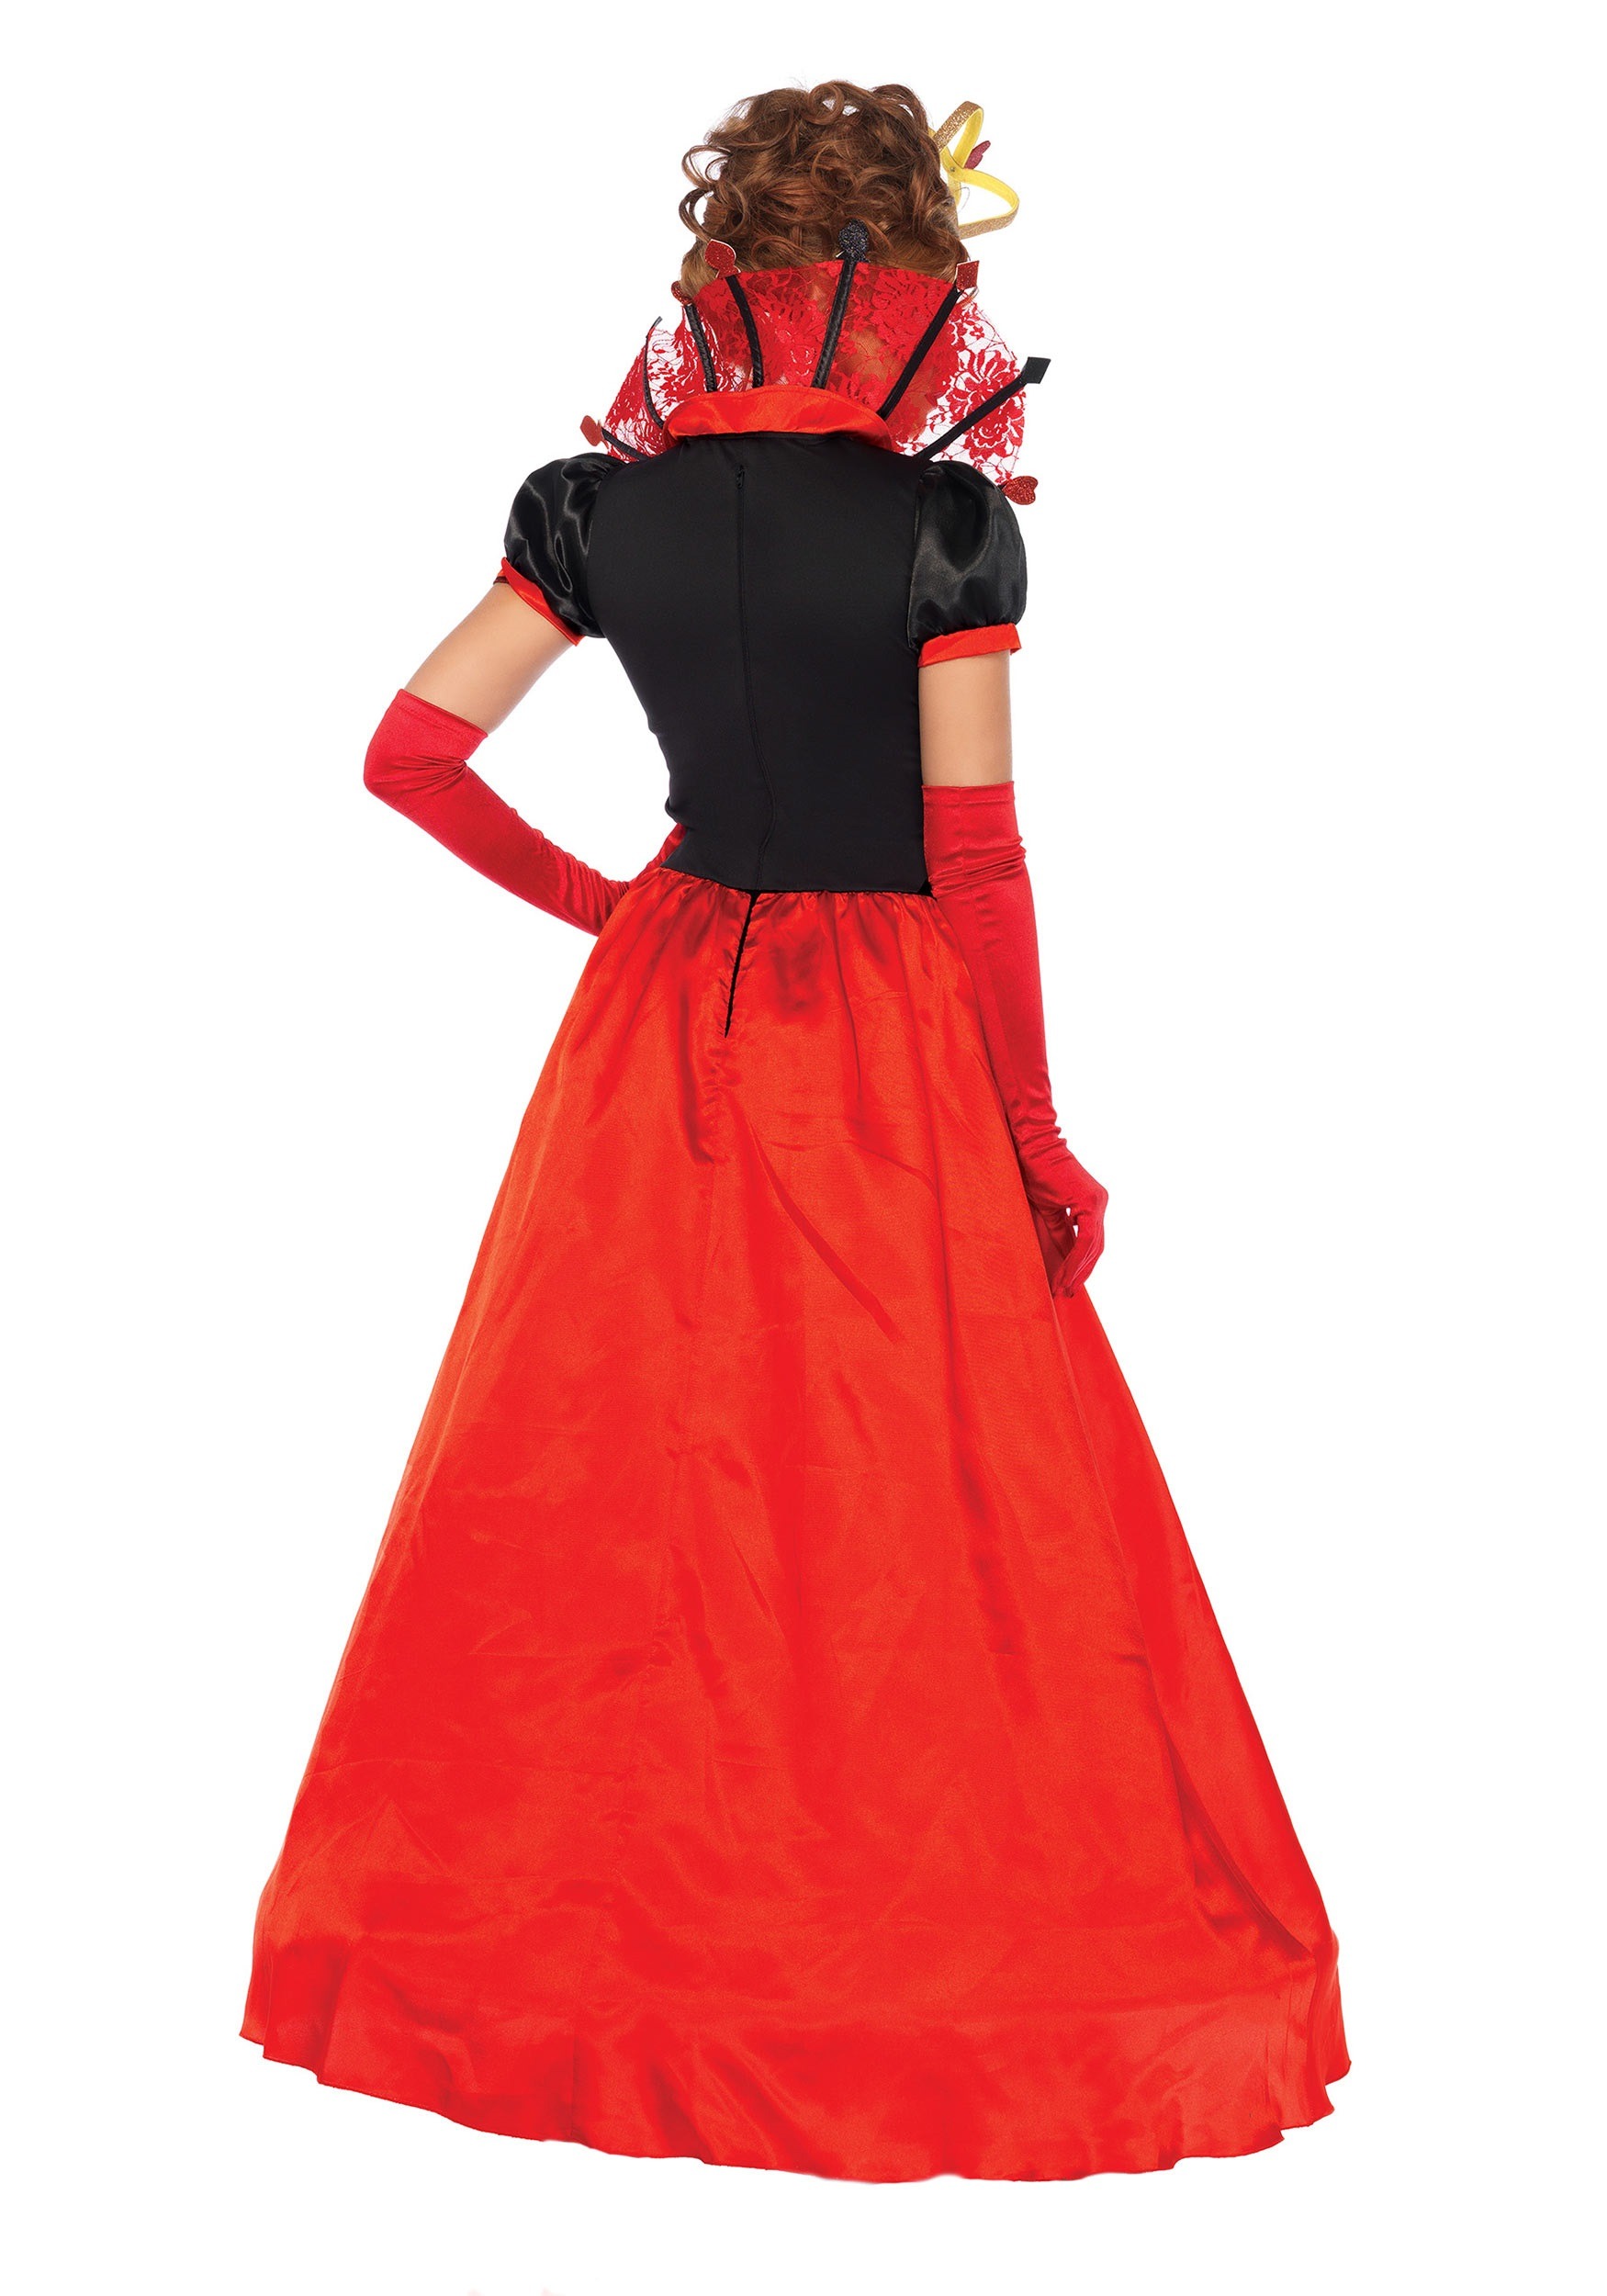 Women's Deluxe Queen Of Hearts Fancy Dress Costume